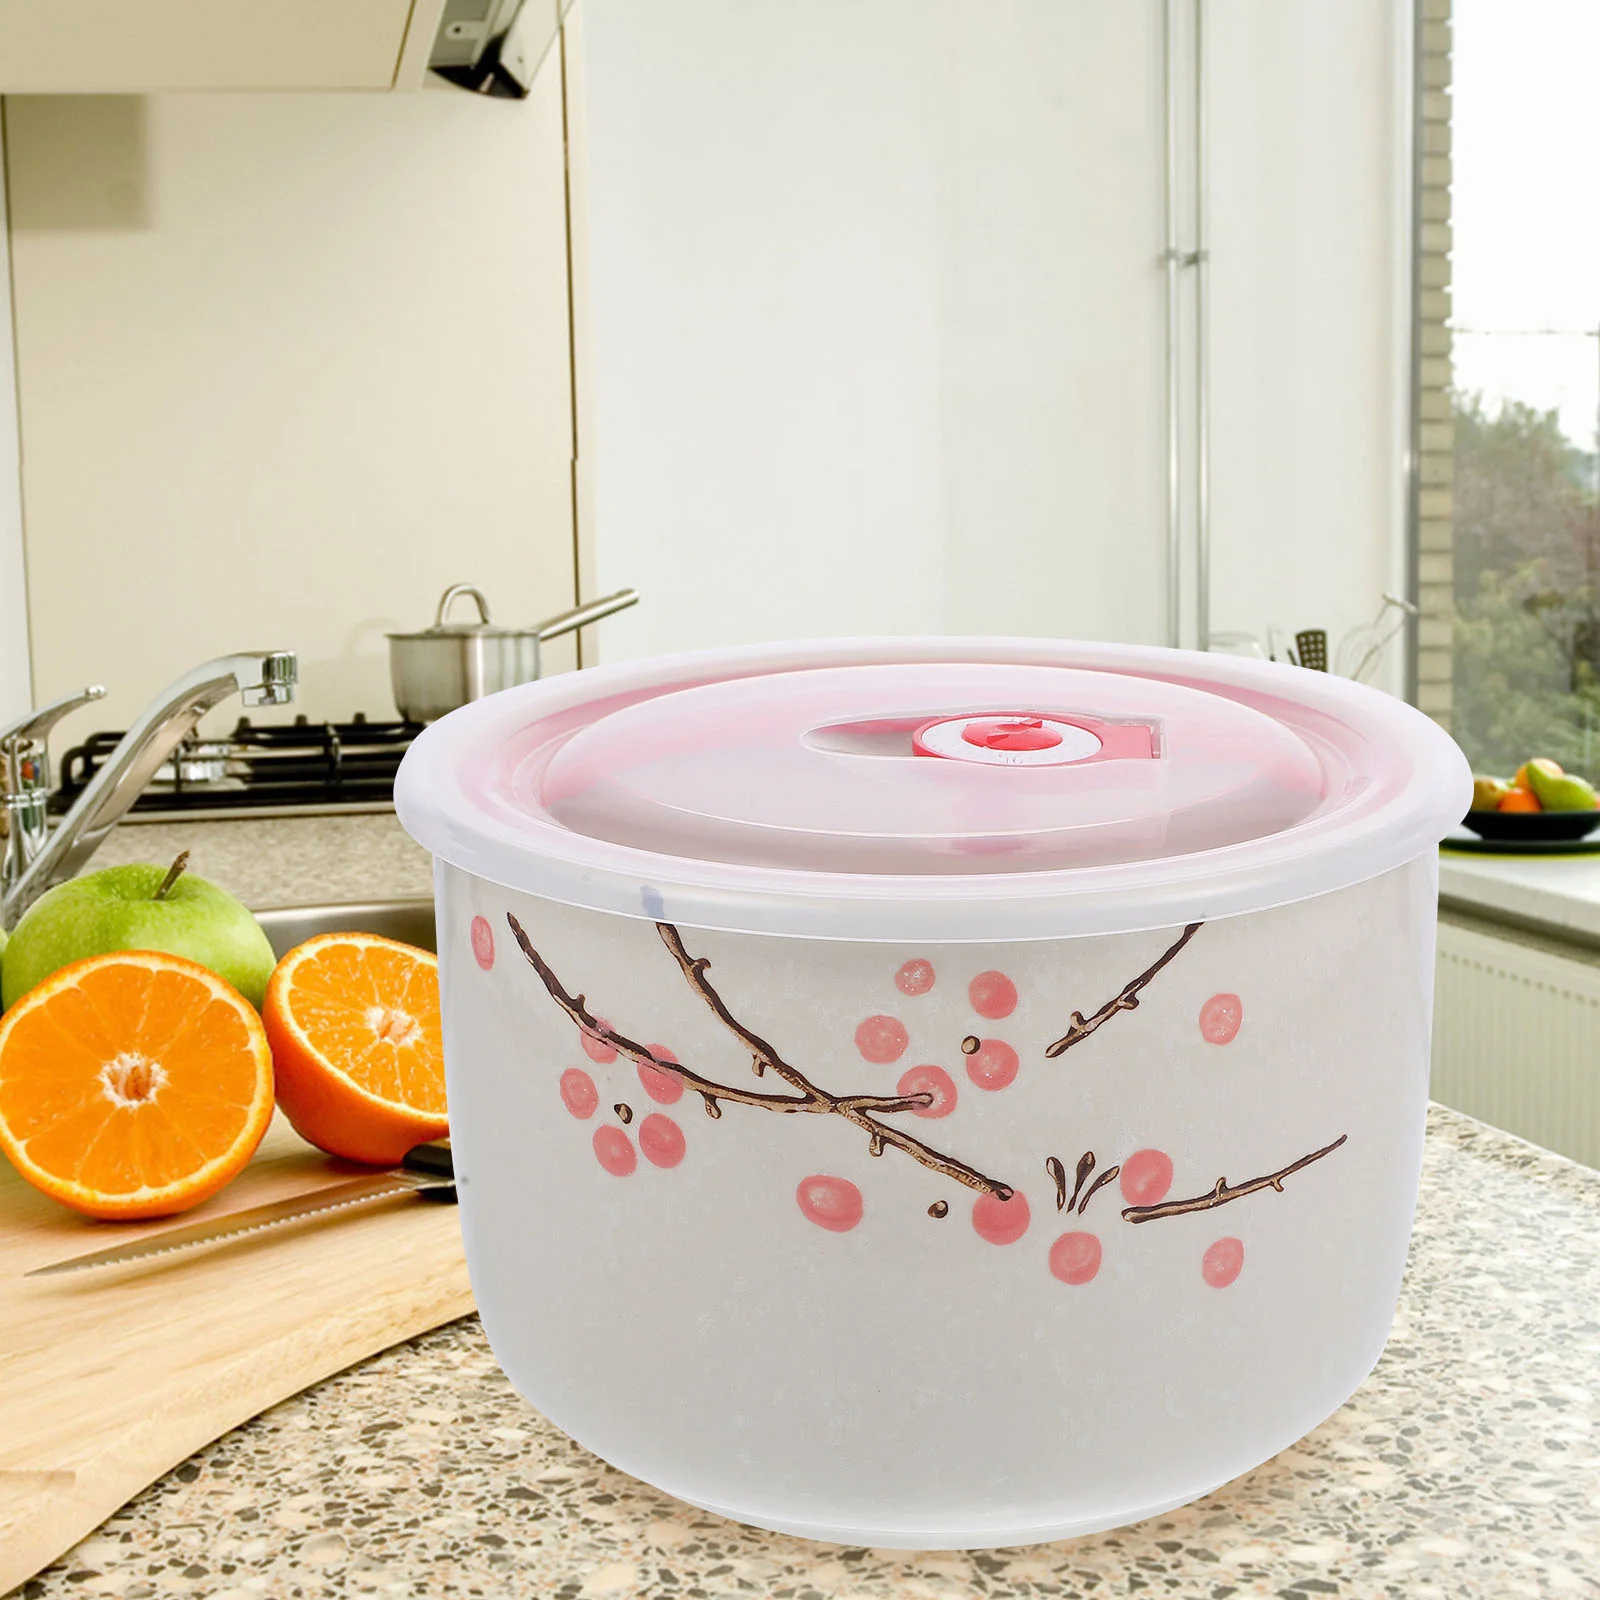 

Lunch Accessory Compact Food Bowl Bento Convenient Eat Ceramic Household Instant Noodle School Ramen Bowls Lids